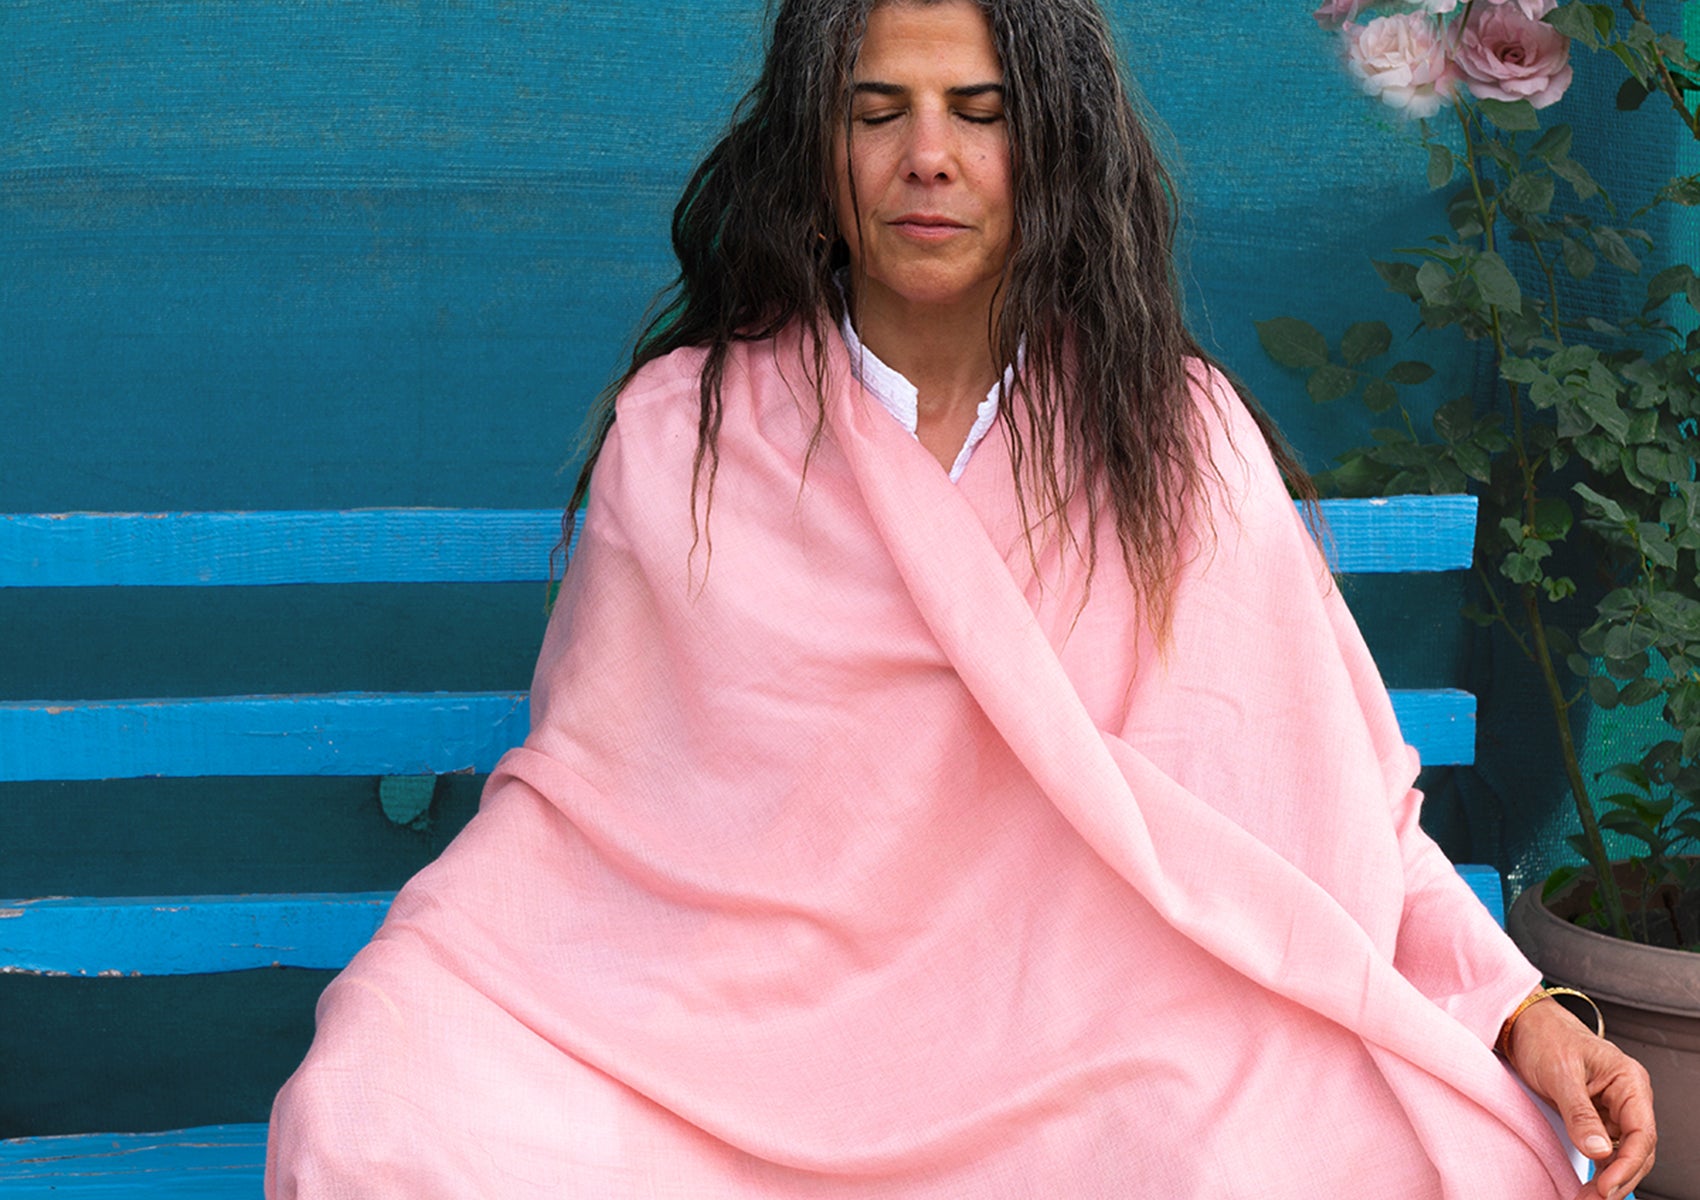 Lakshmi Light - Authentic Pashmina Meditation Shawl - Pink